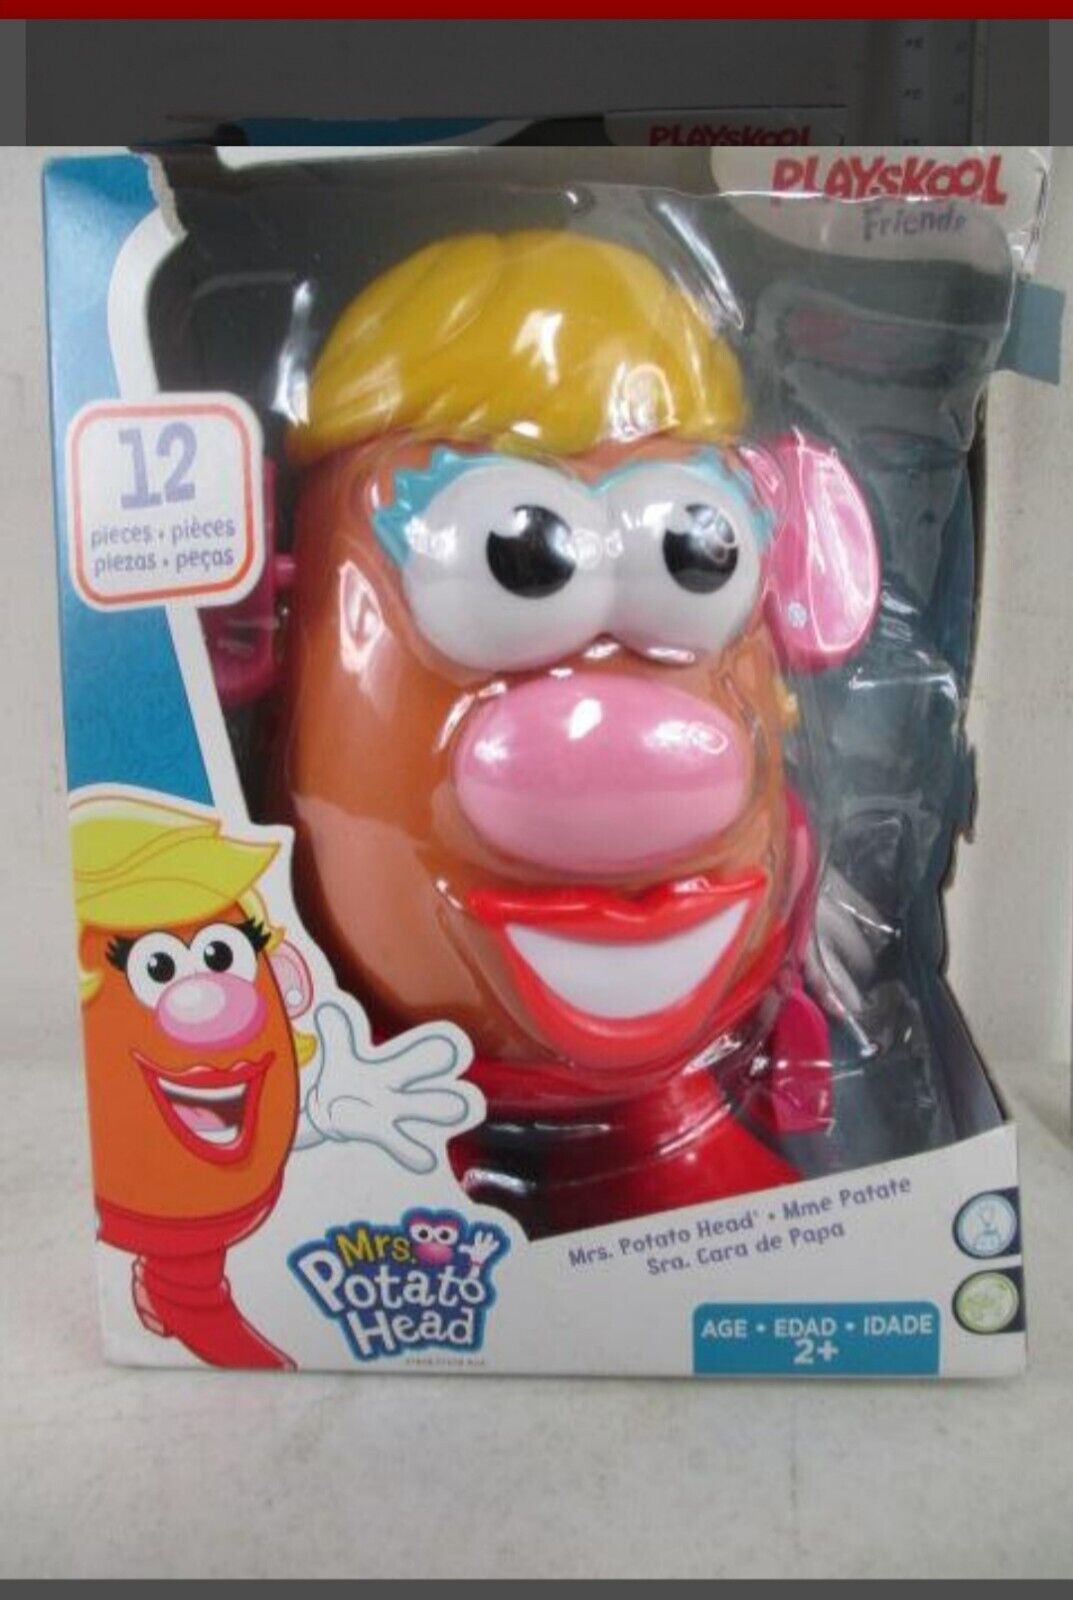 Playskool Friends - Mrs. Potato Head Figure Playskool 27658